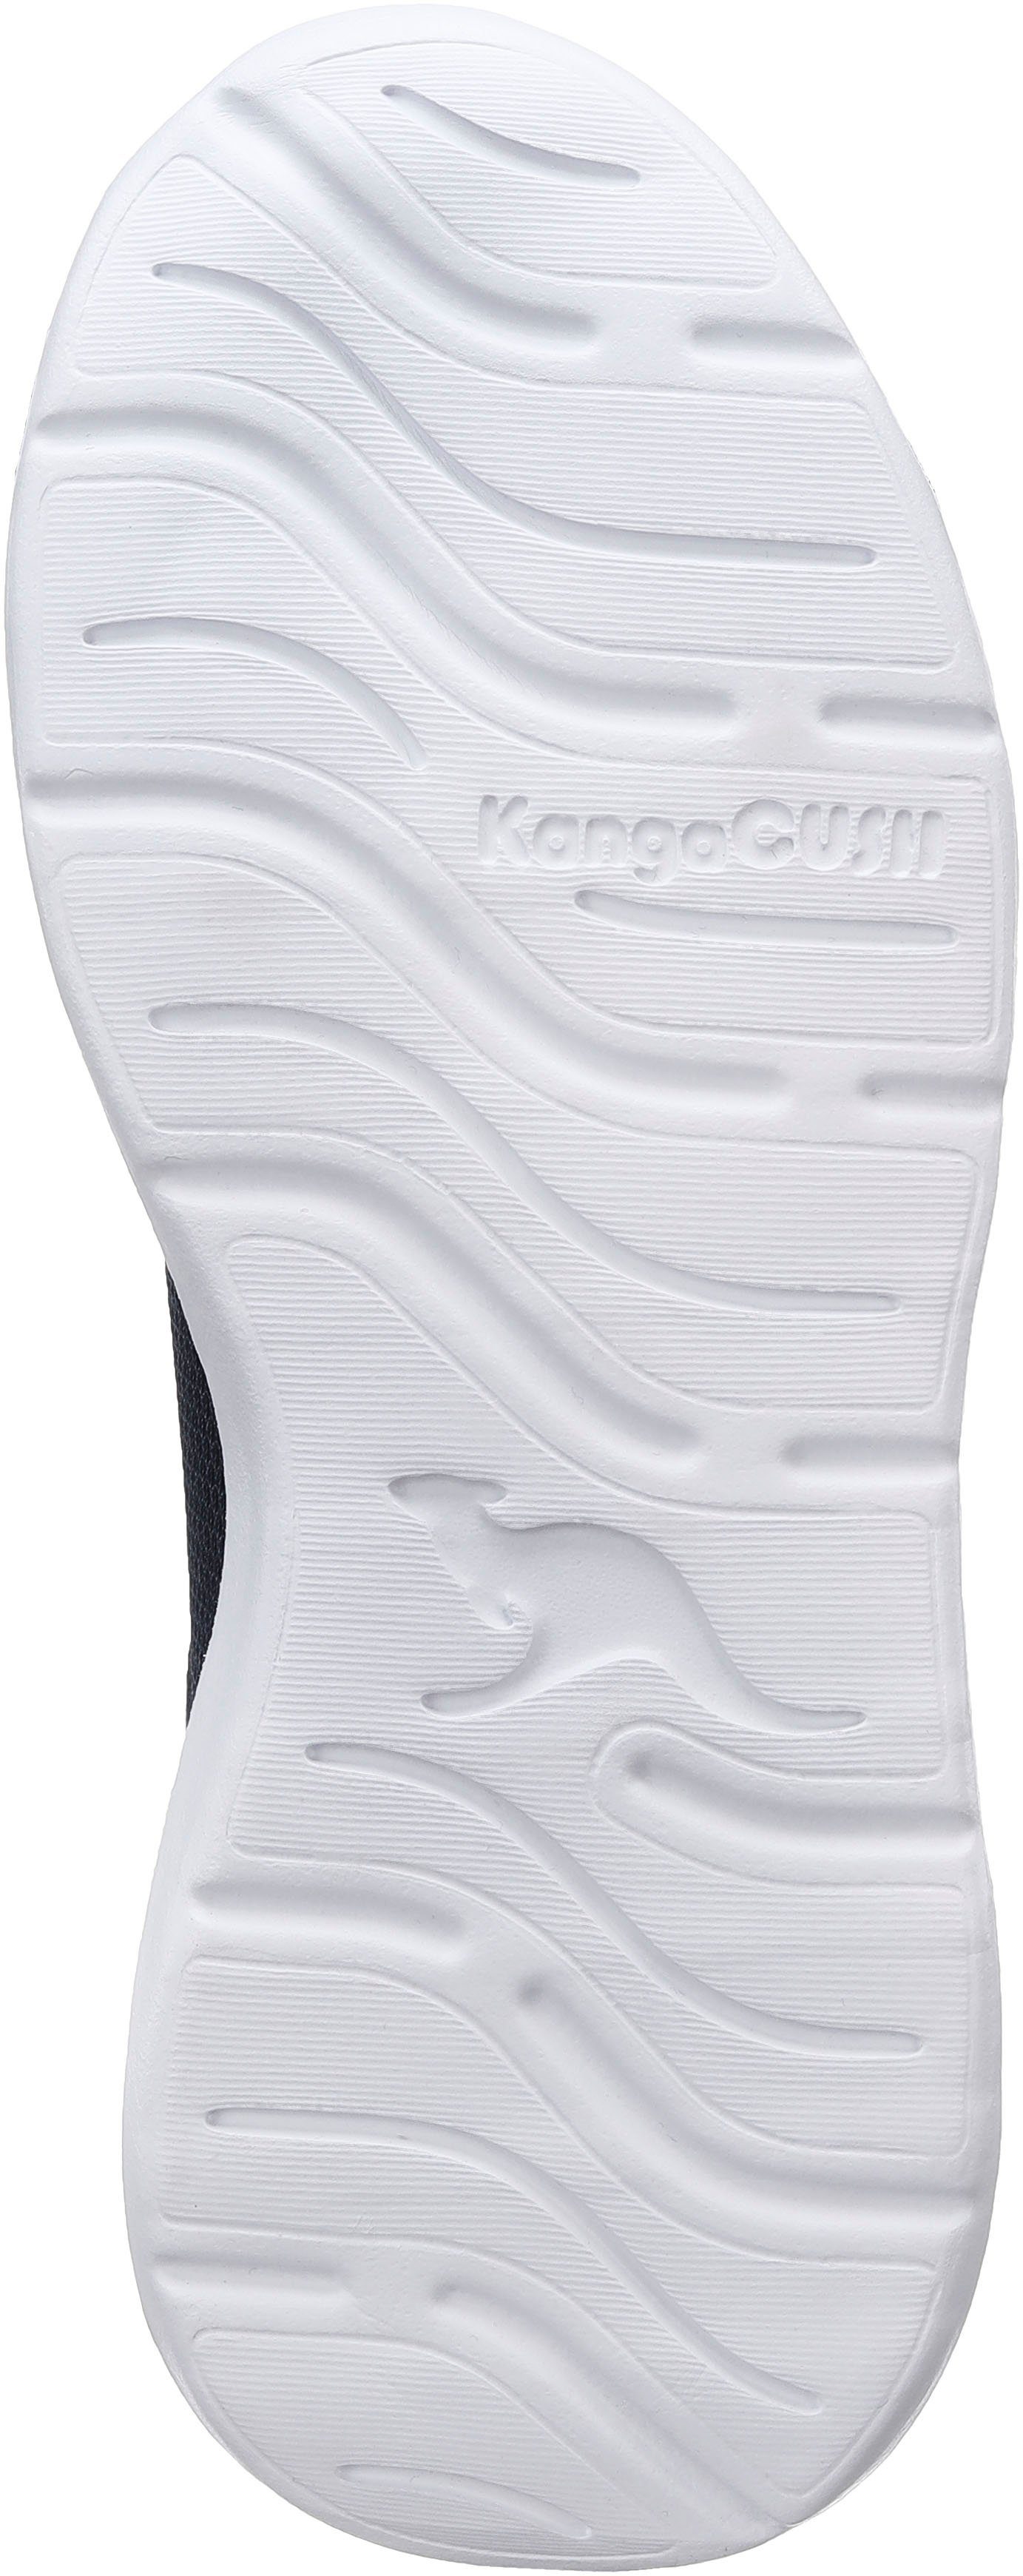 Sneaker KangaROOS Klettverschluss elastischen und KL-Rise mit Schnürsenkeln EV navy-lime